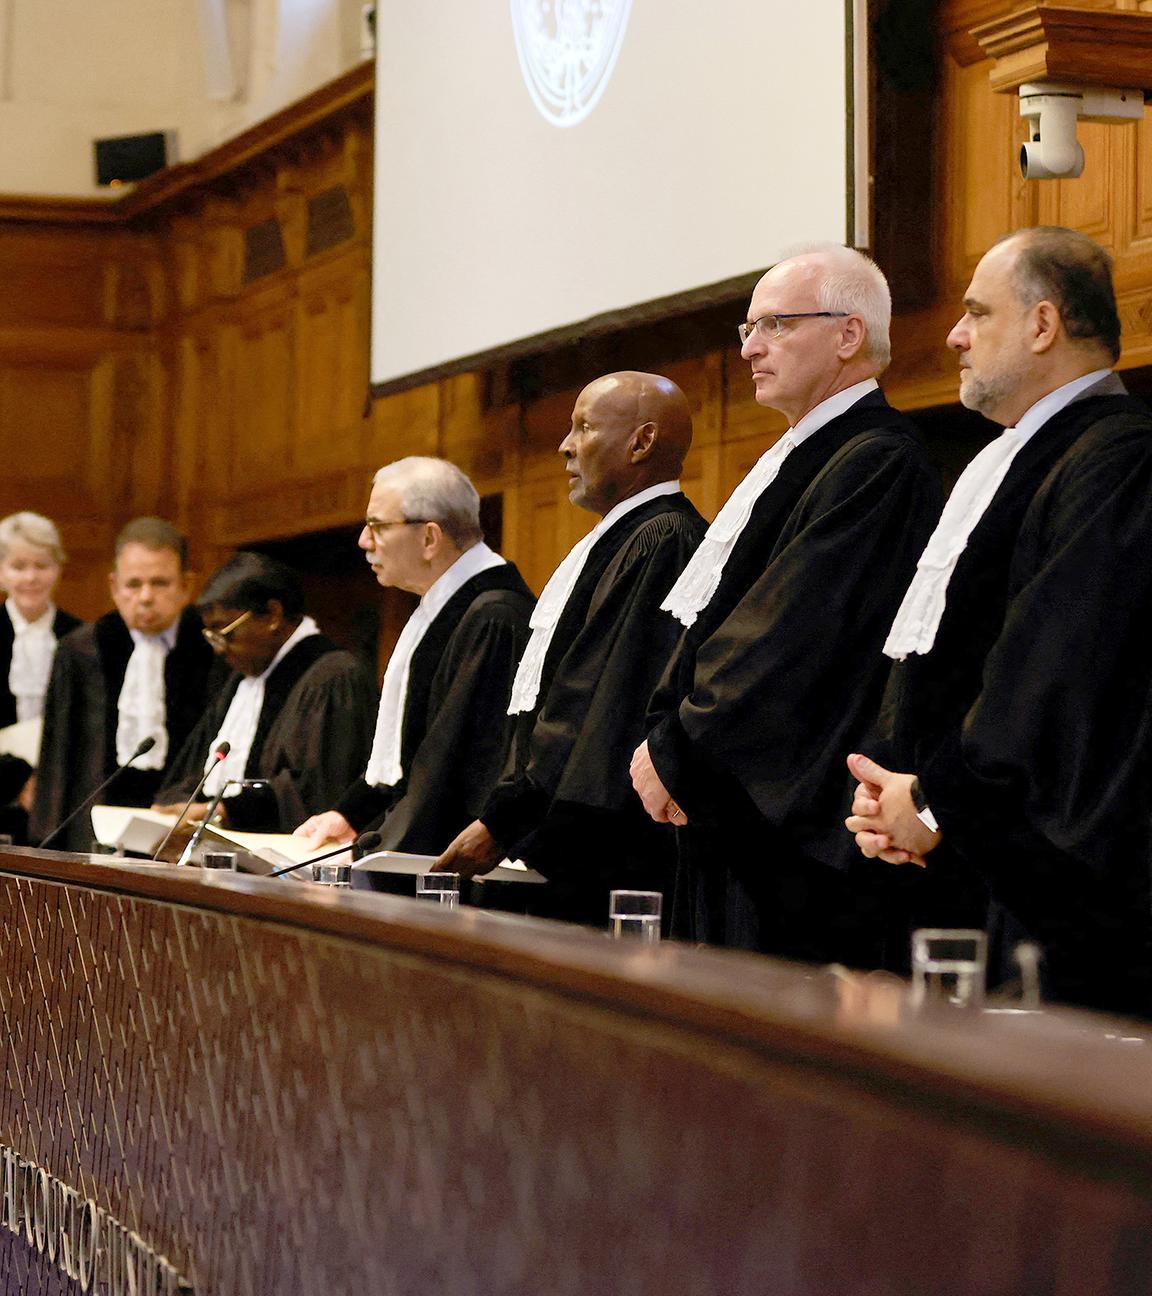 Richer am Internationalen Gerichtshof in Den Haag